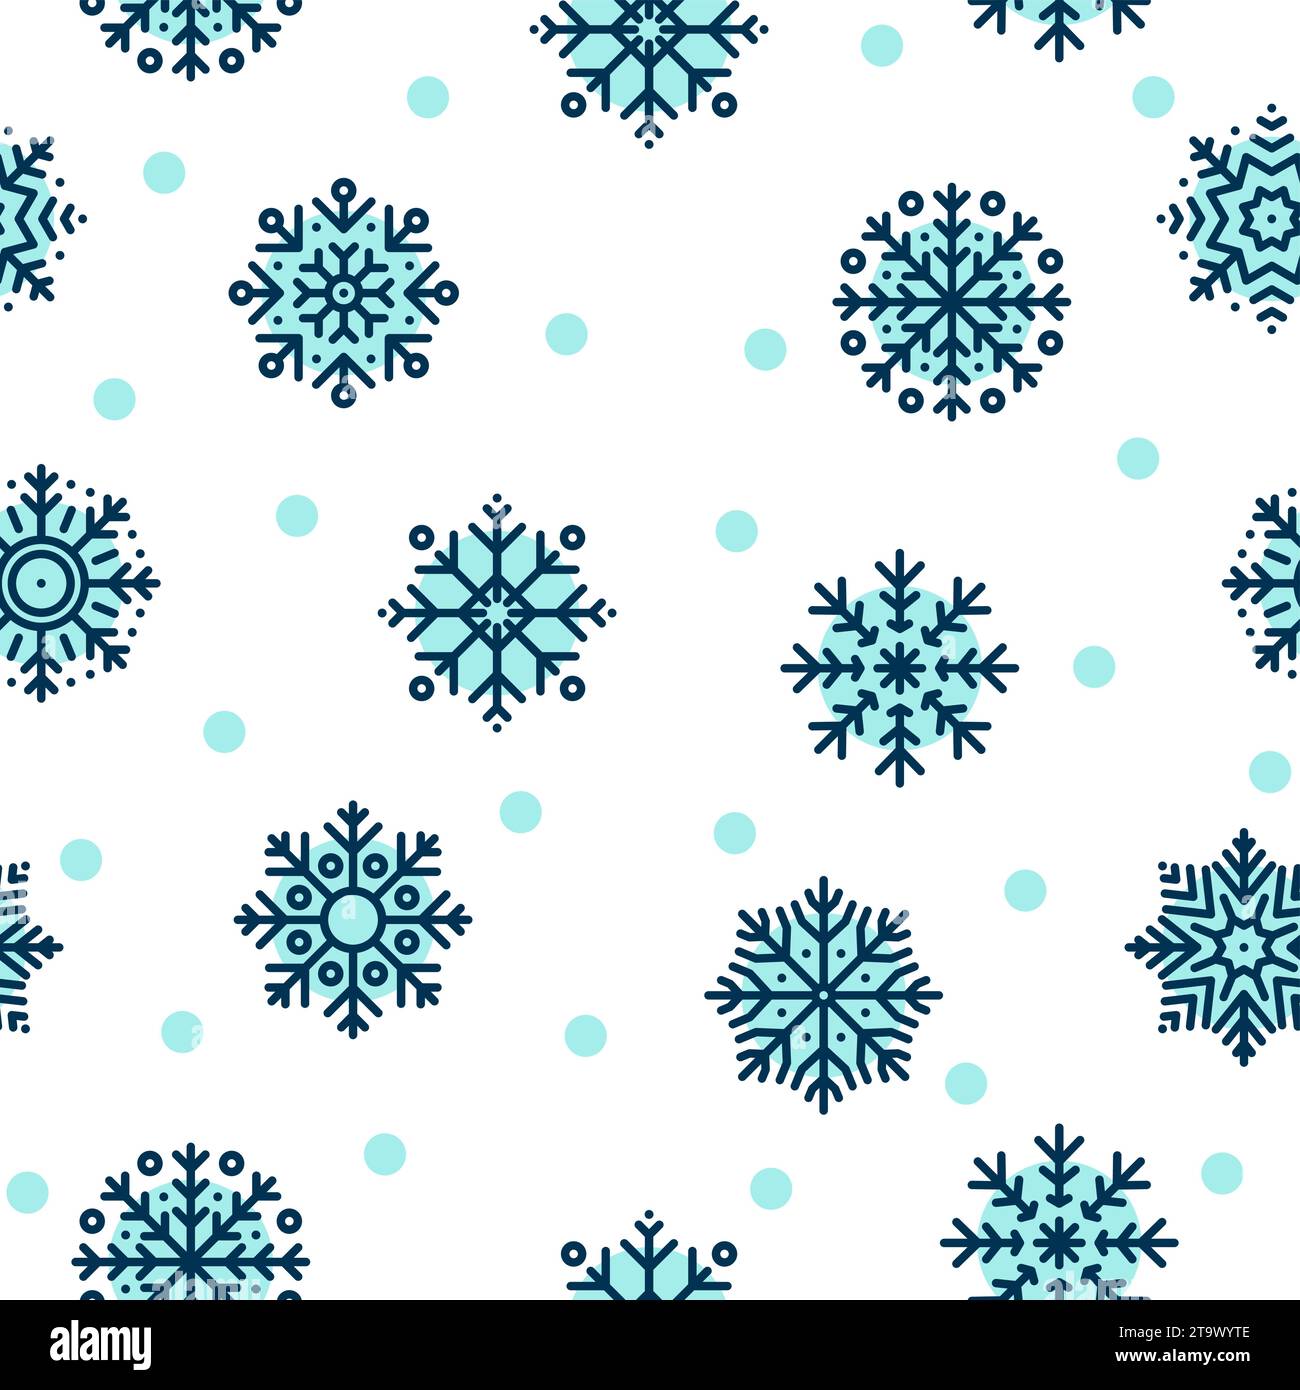 Motivo natalizio senza cuciture con fiocchi di neve blu su sfondo bianco. Decorazioni invernali. Felice anno nuovo, nevicate nella stagione fredda. Illustrazione vettoriale. Illustrazione Vettoriale